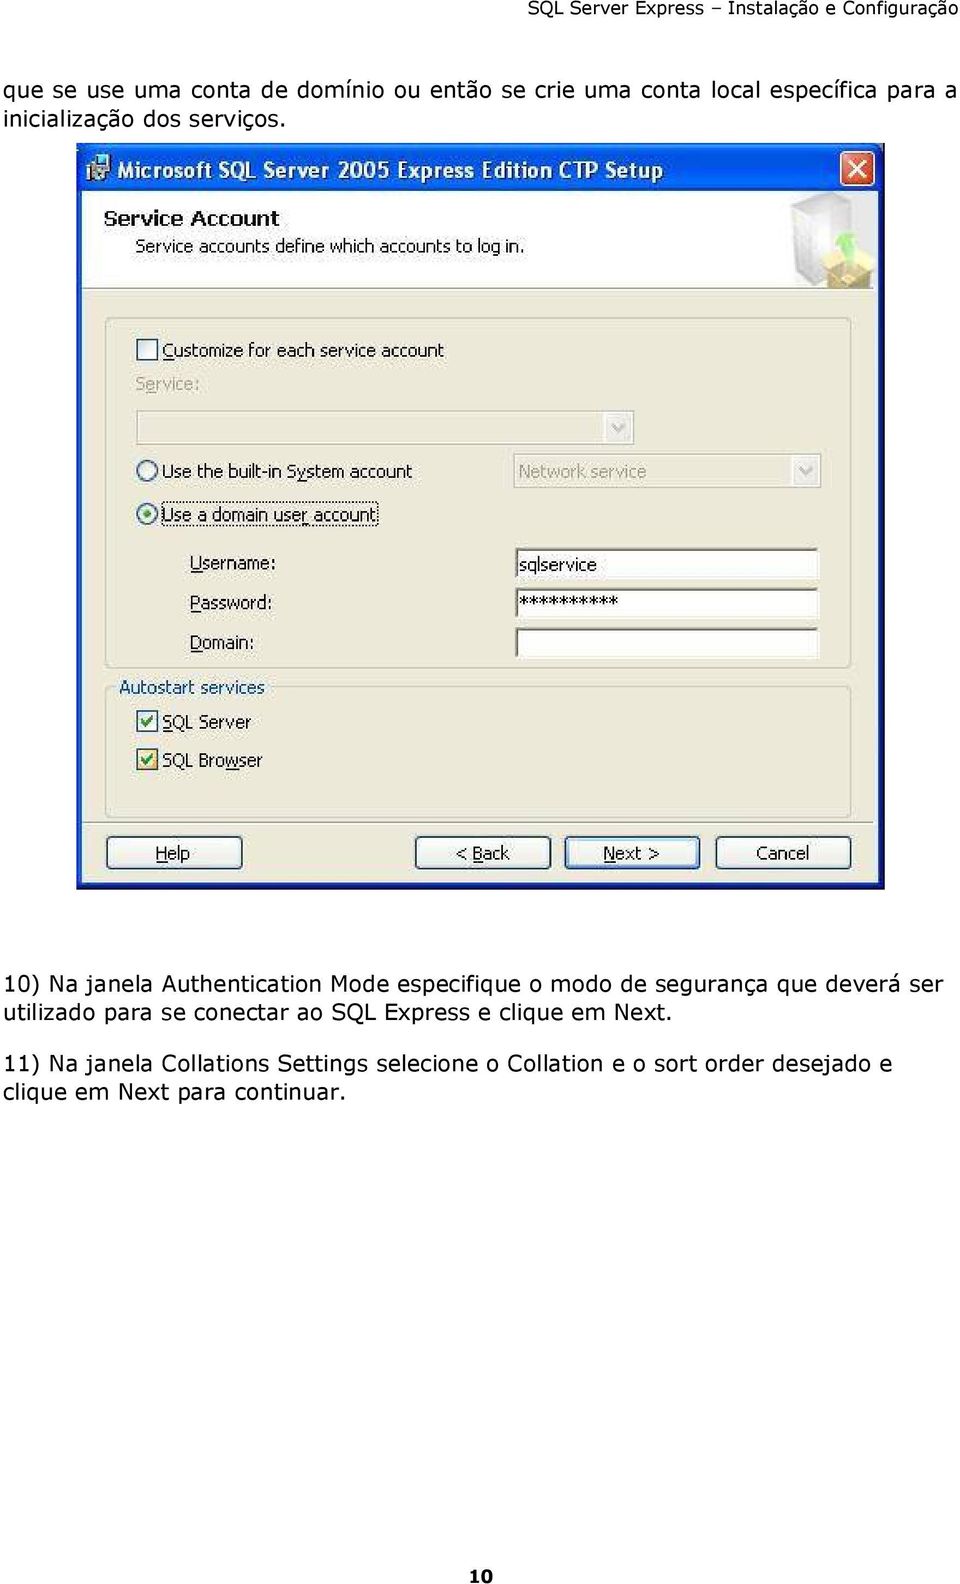 10) Na janela Authentication Mode especifique o modo de segurança que deverá ser utilizado